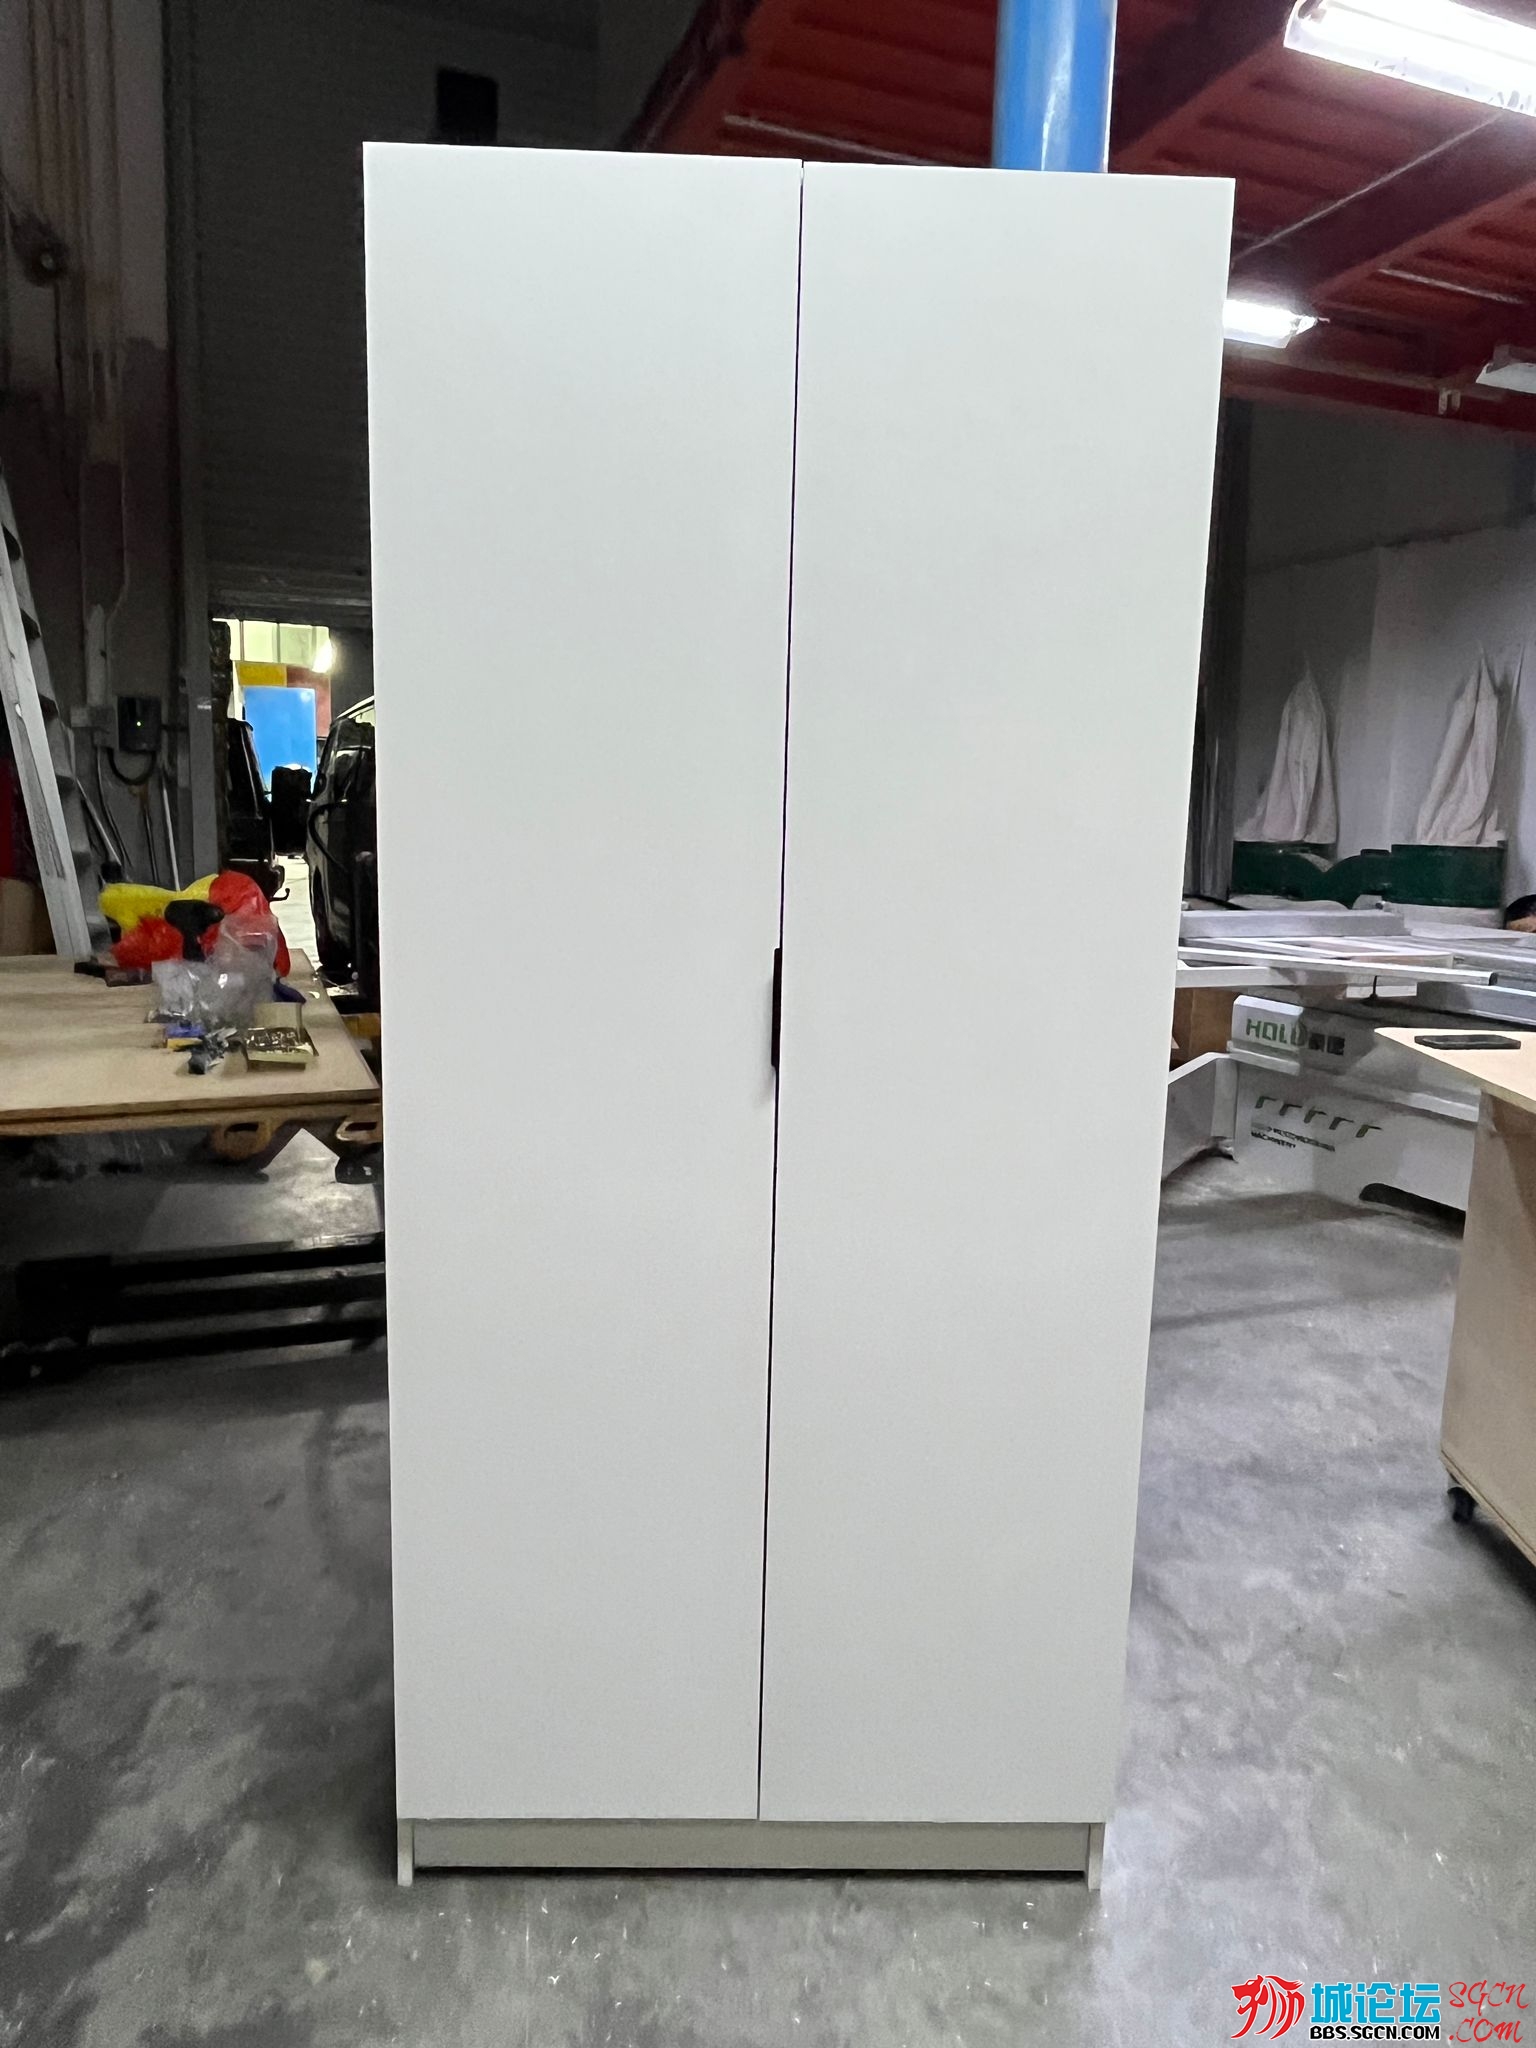 wardrobe white 80cm.jpg